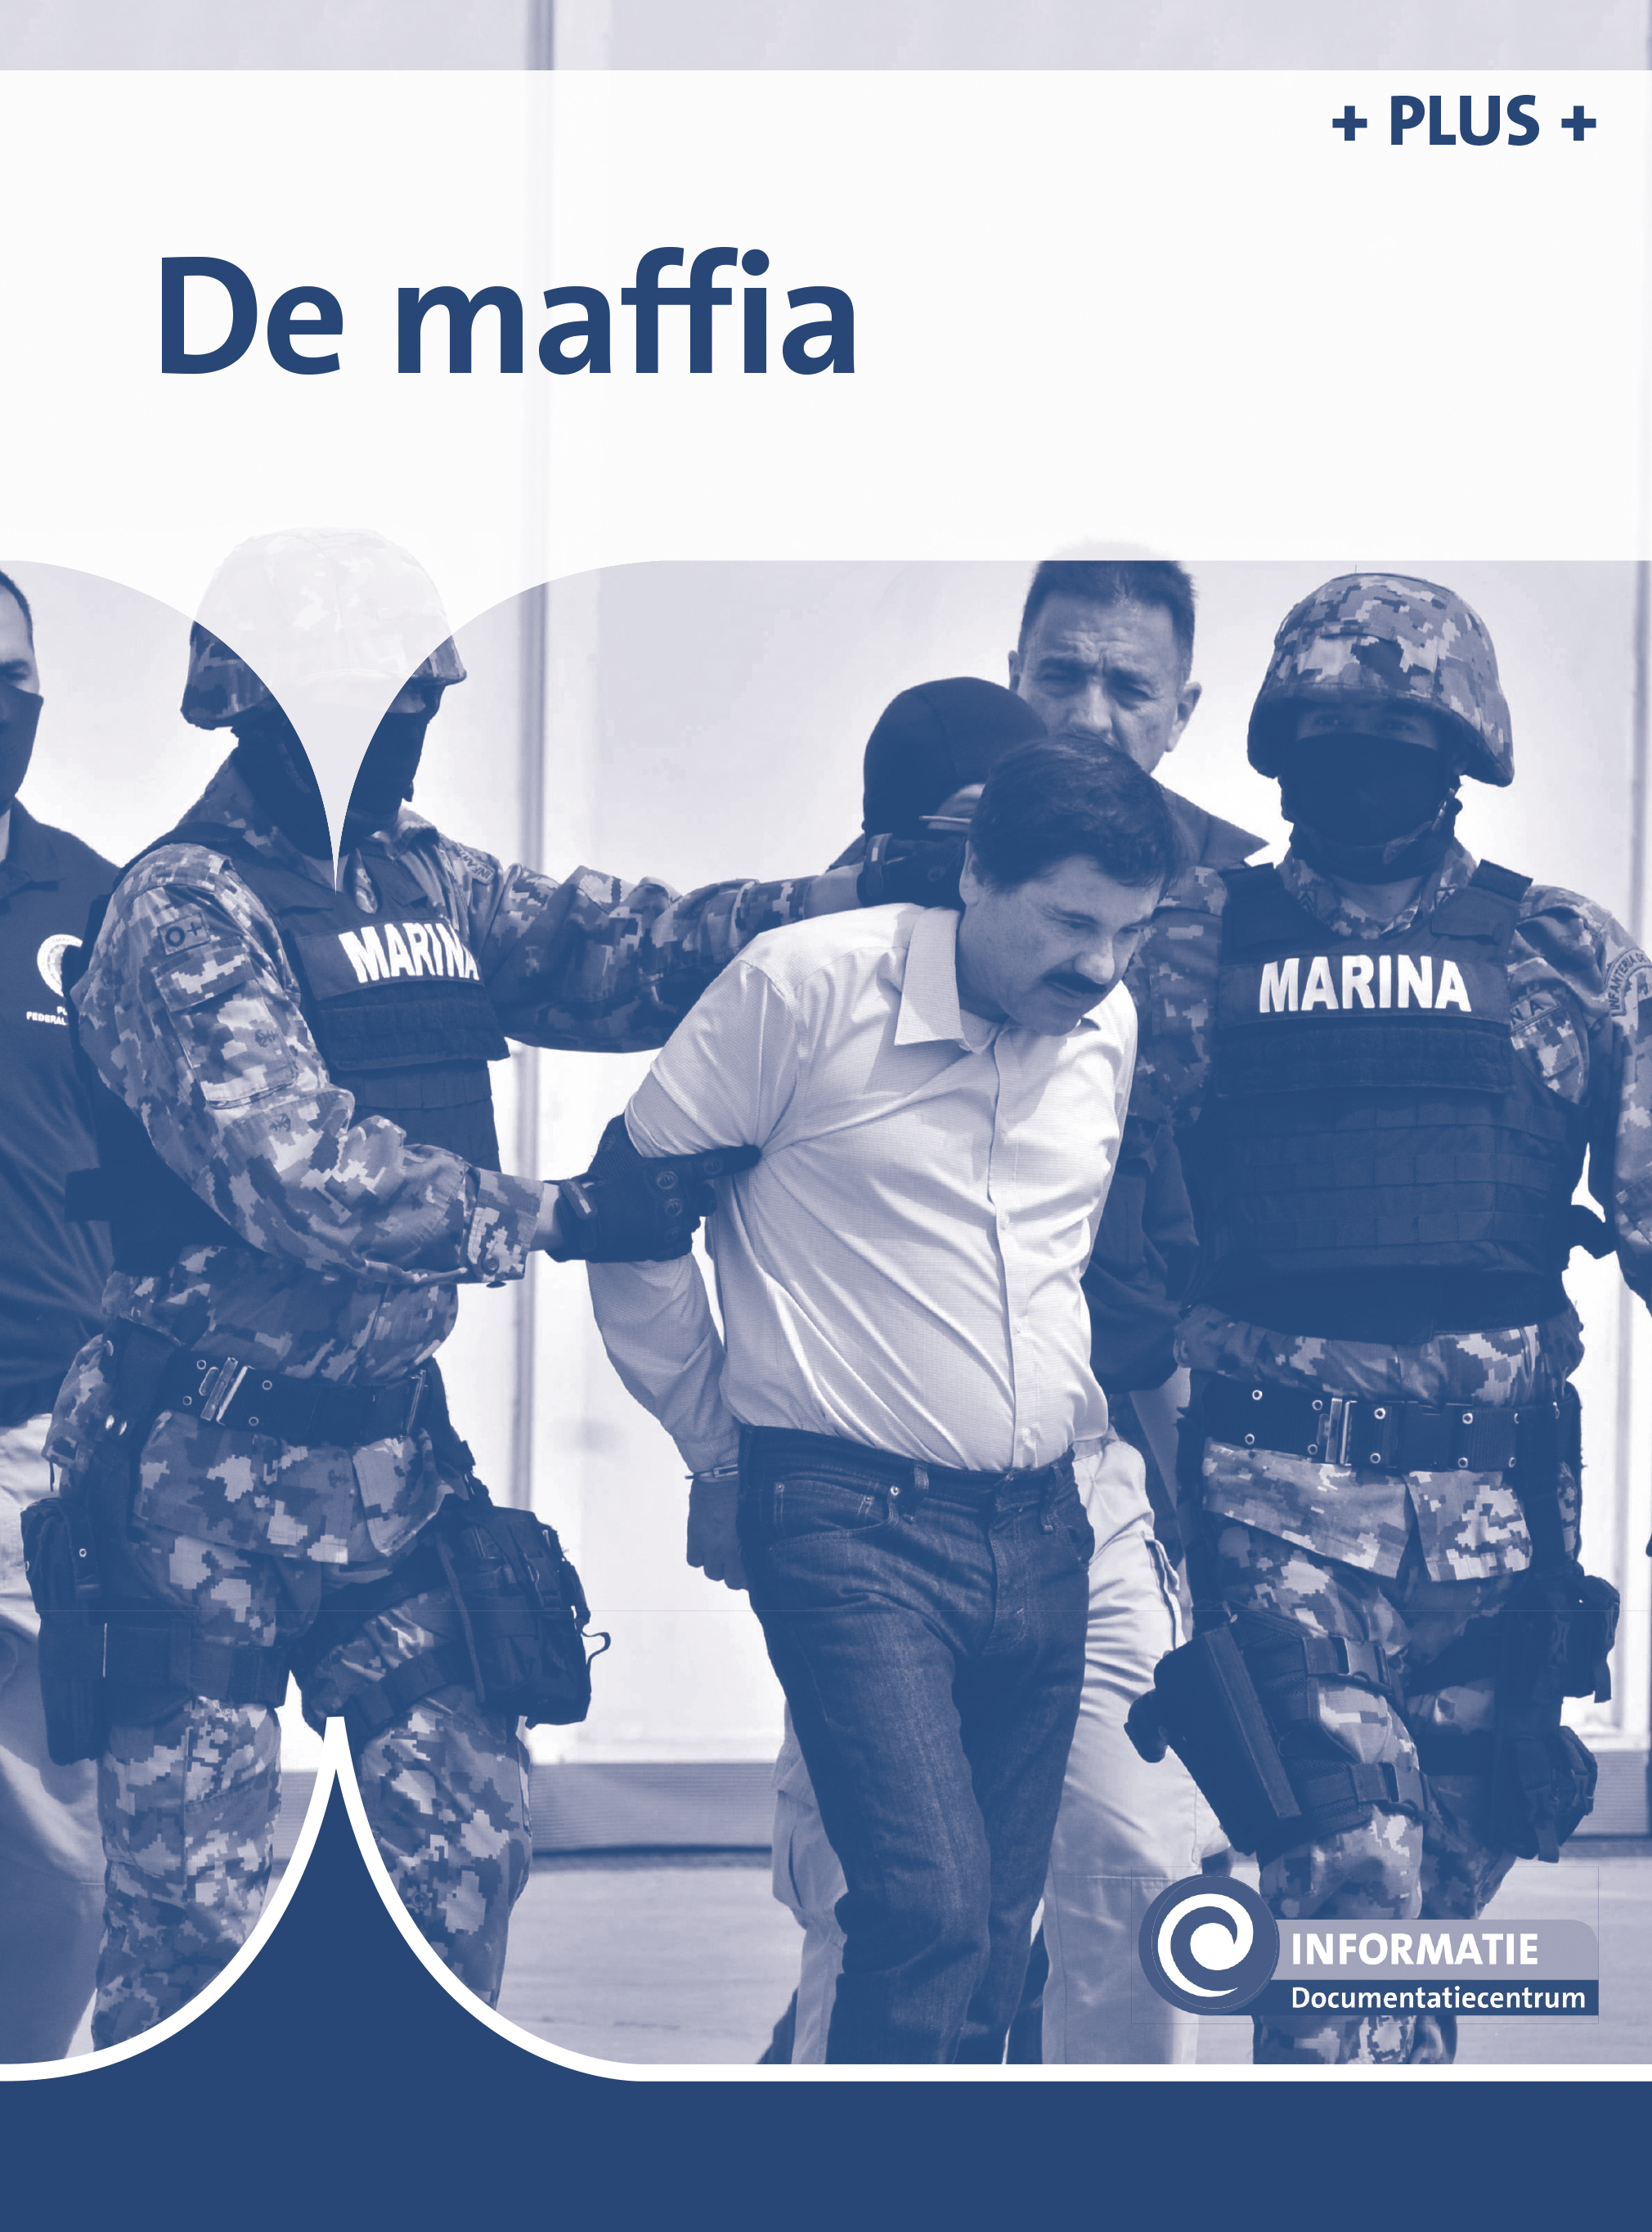 DNKINF110 De maffia (plusboekje)